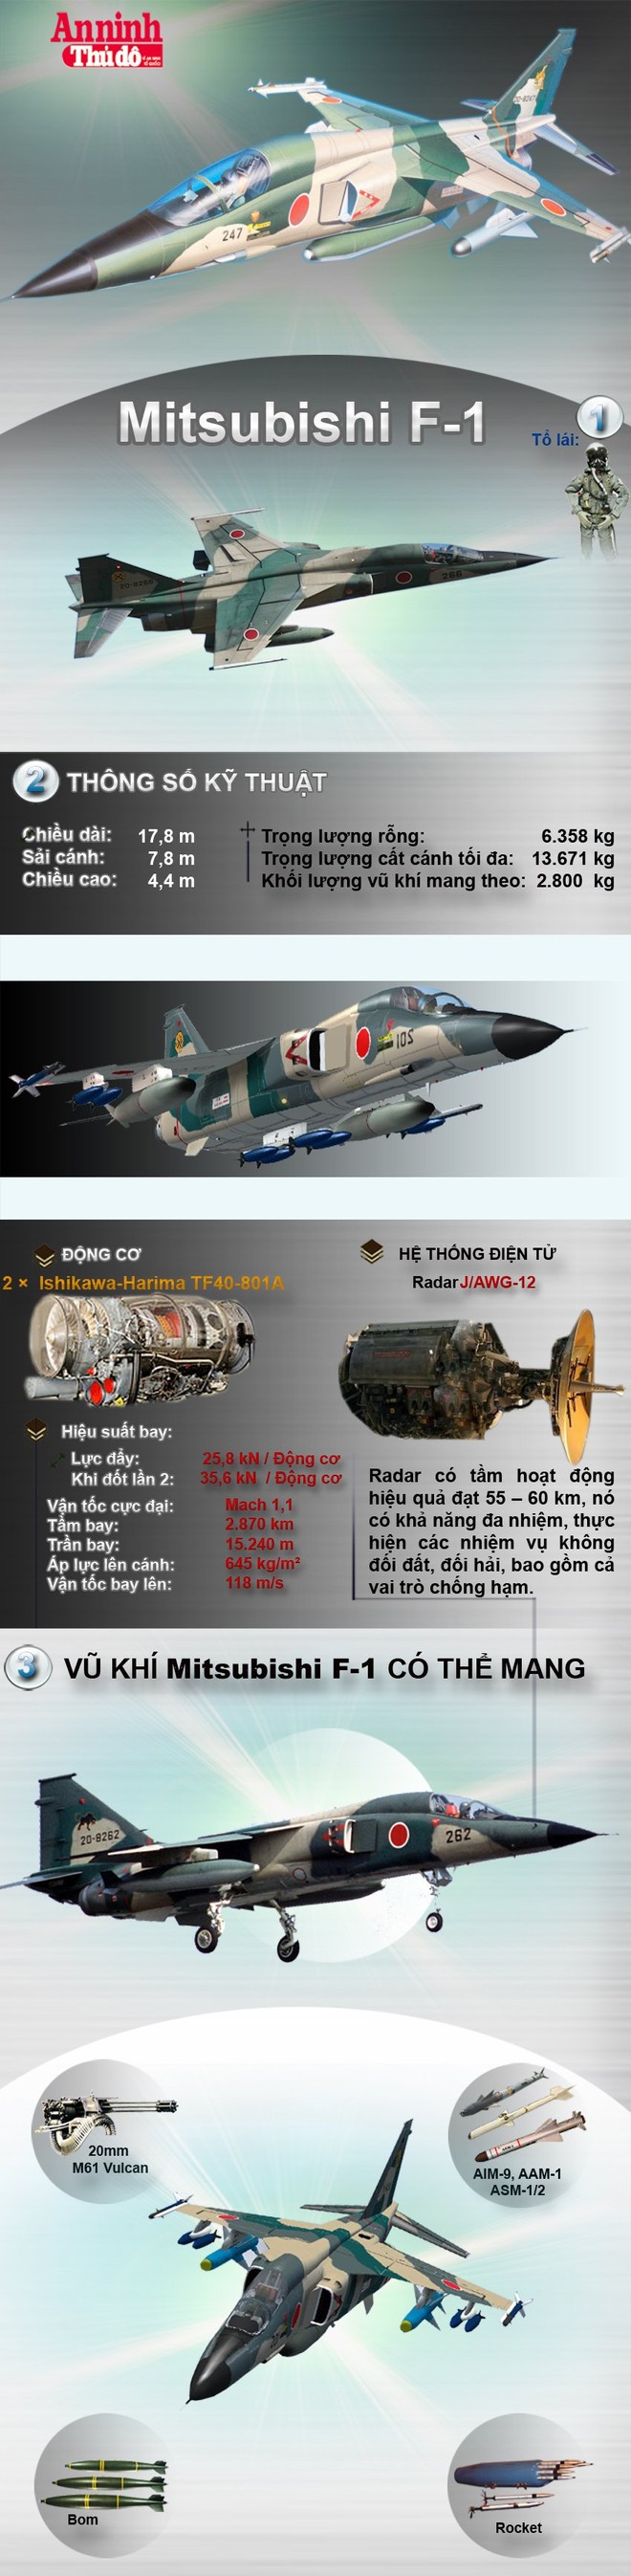 [Infographic] Mitsubishi F-1-Niềm tự hào của nền quốc phòng Nhật Bản ảnh 1